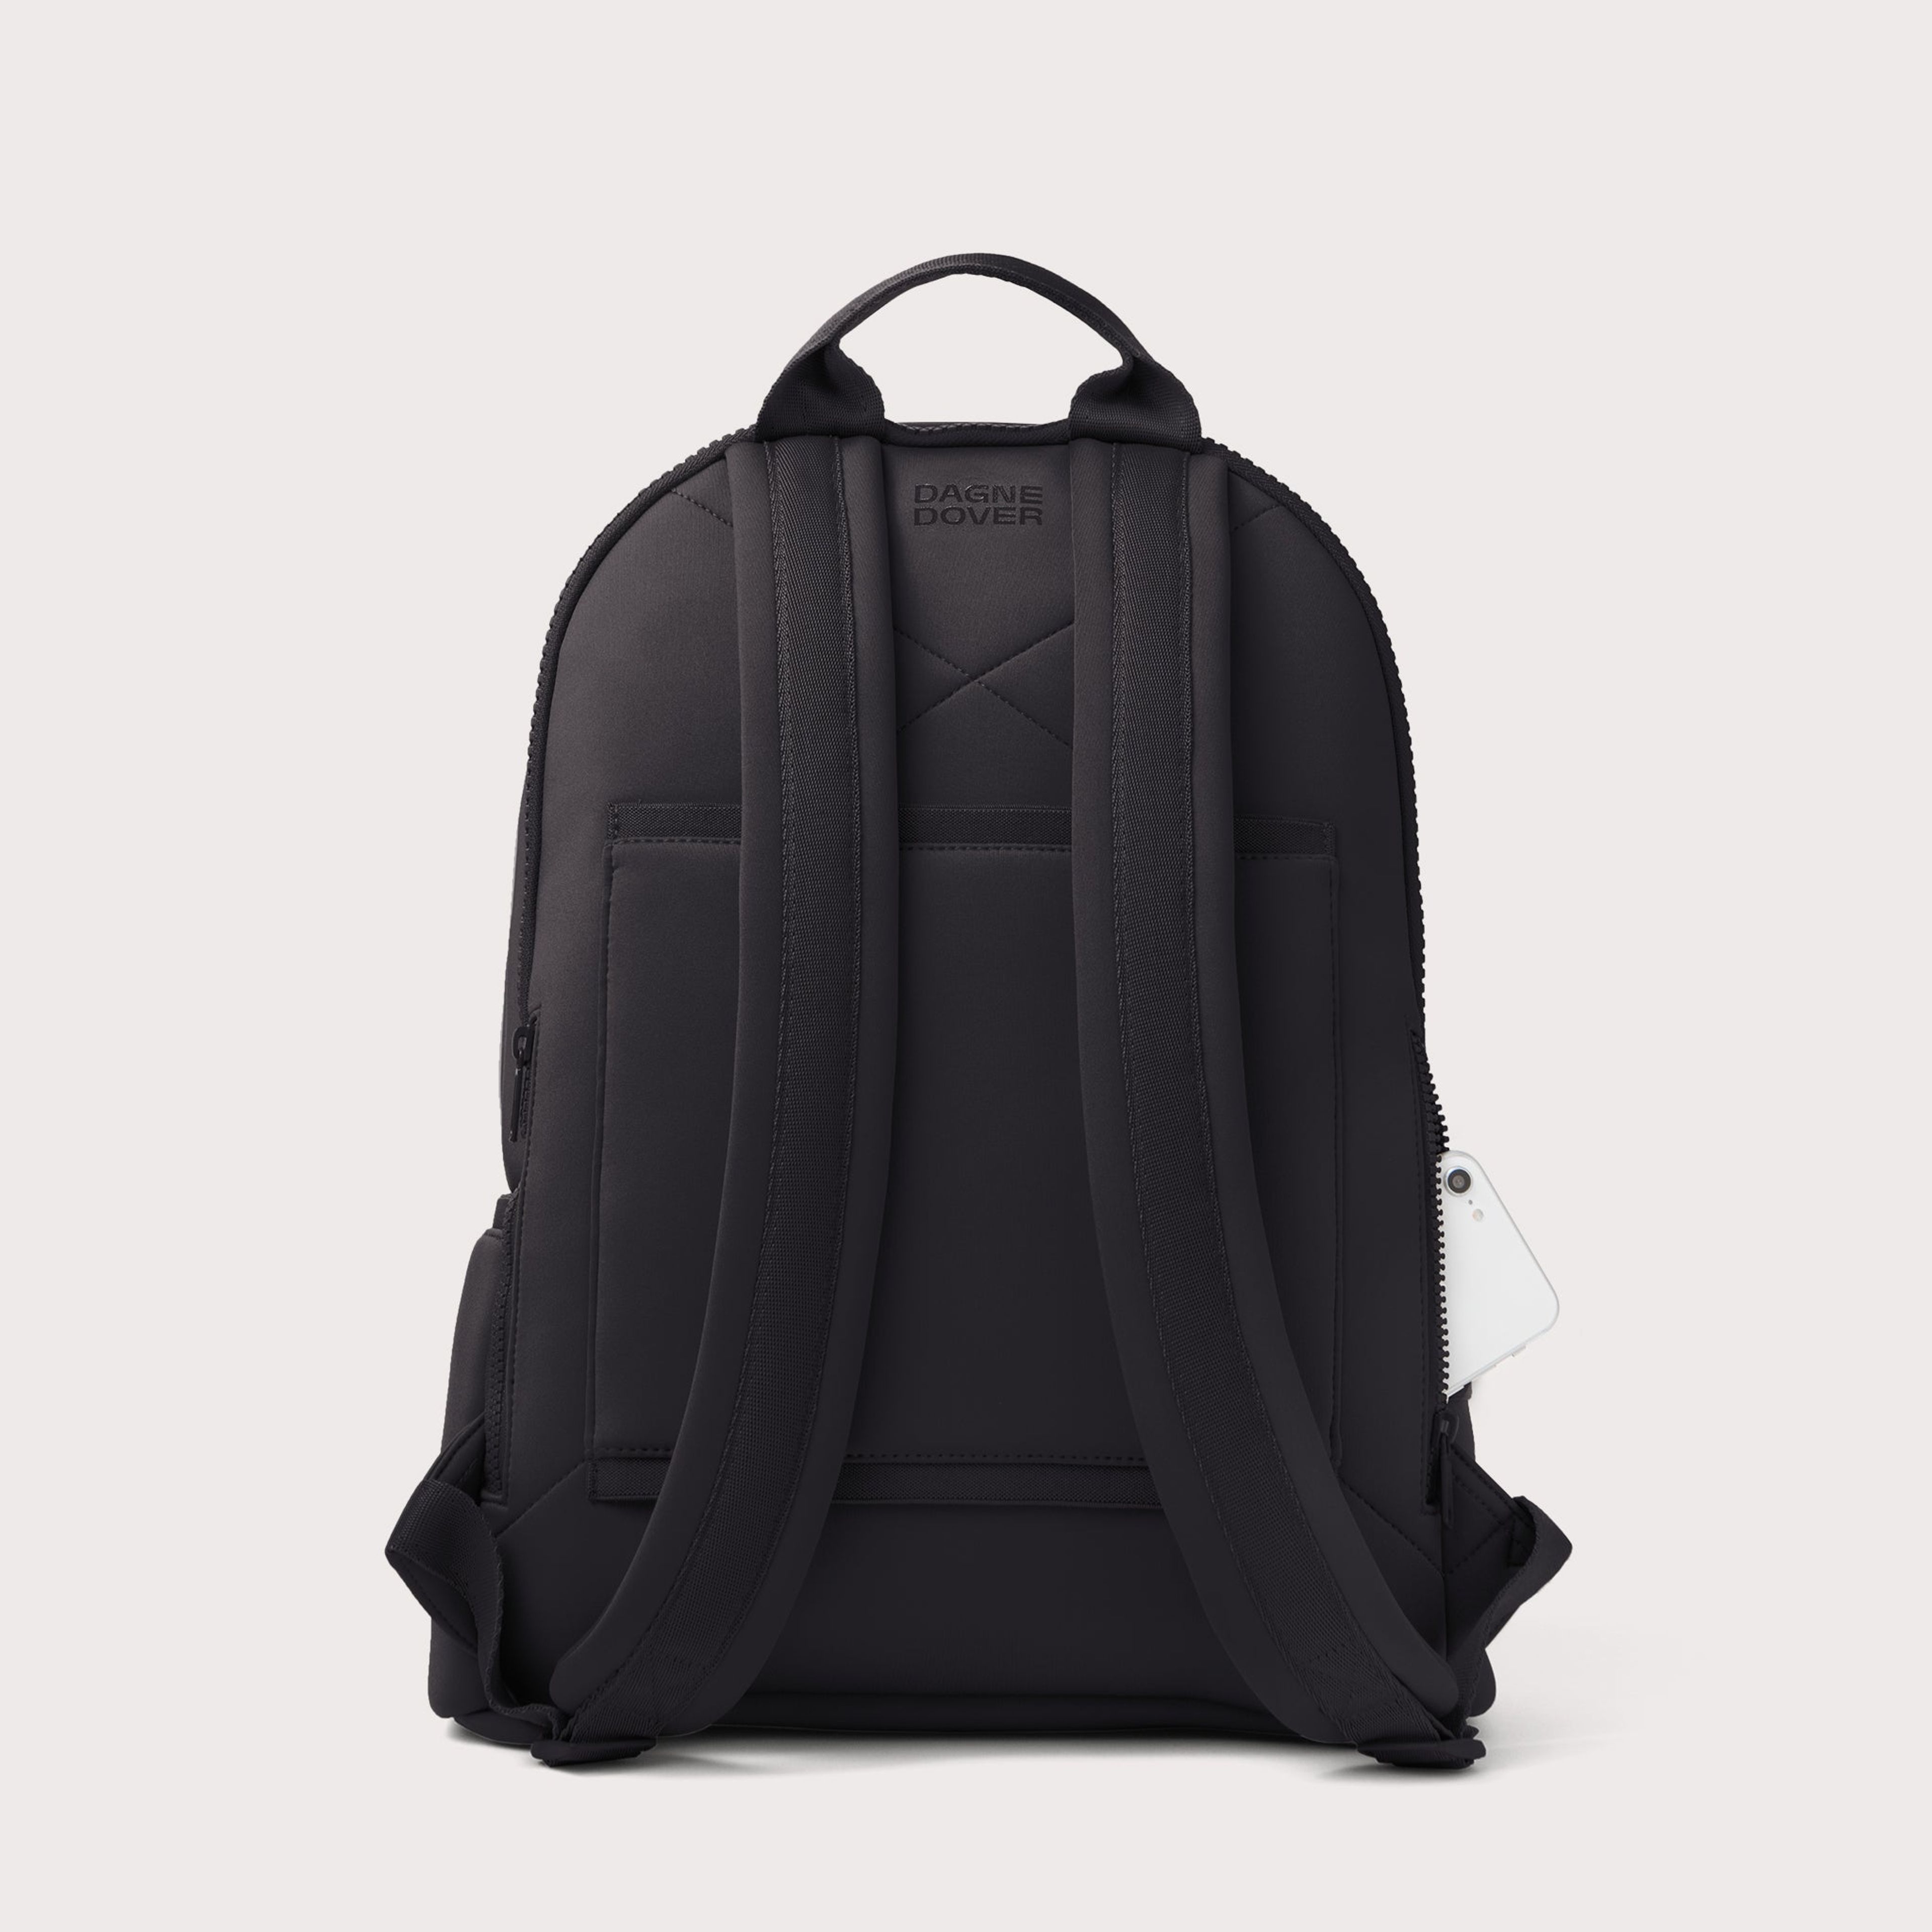 Dakota Backpack in Onyx, Large